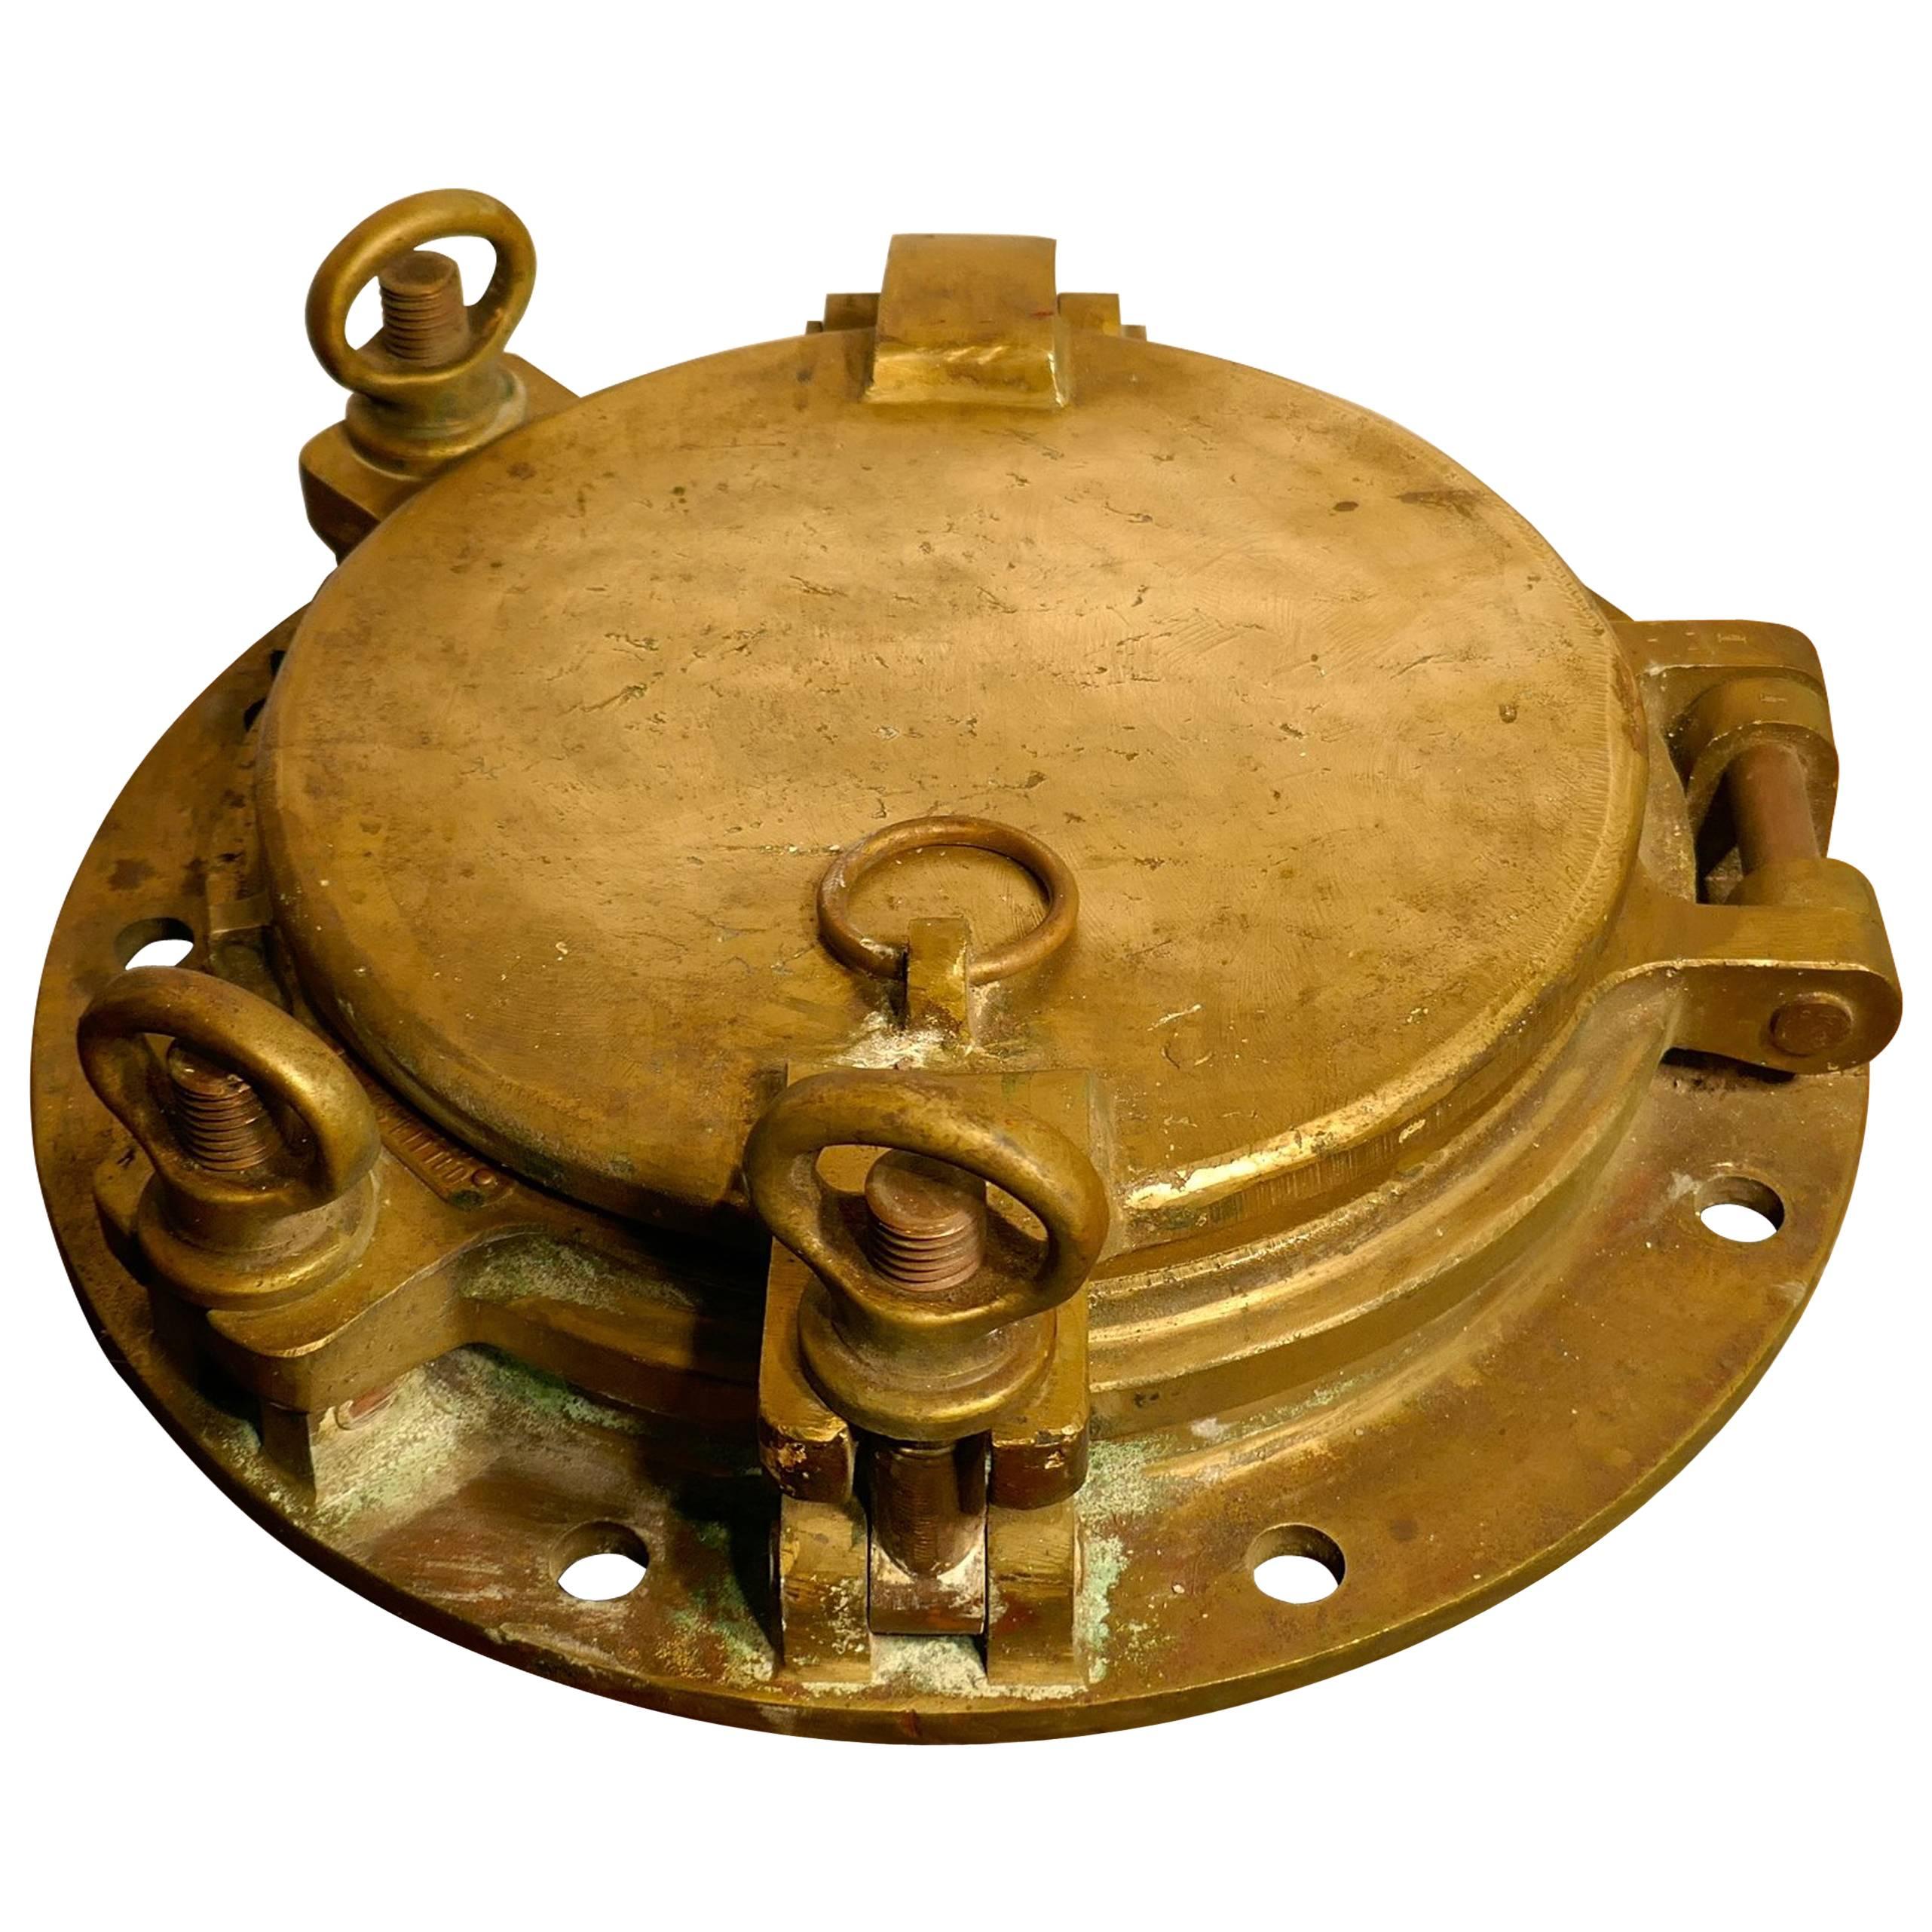 Hublot d'amirauté ouvrant en bronze antique avec couvercle de veilleuse par Roby & Utley